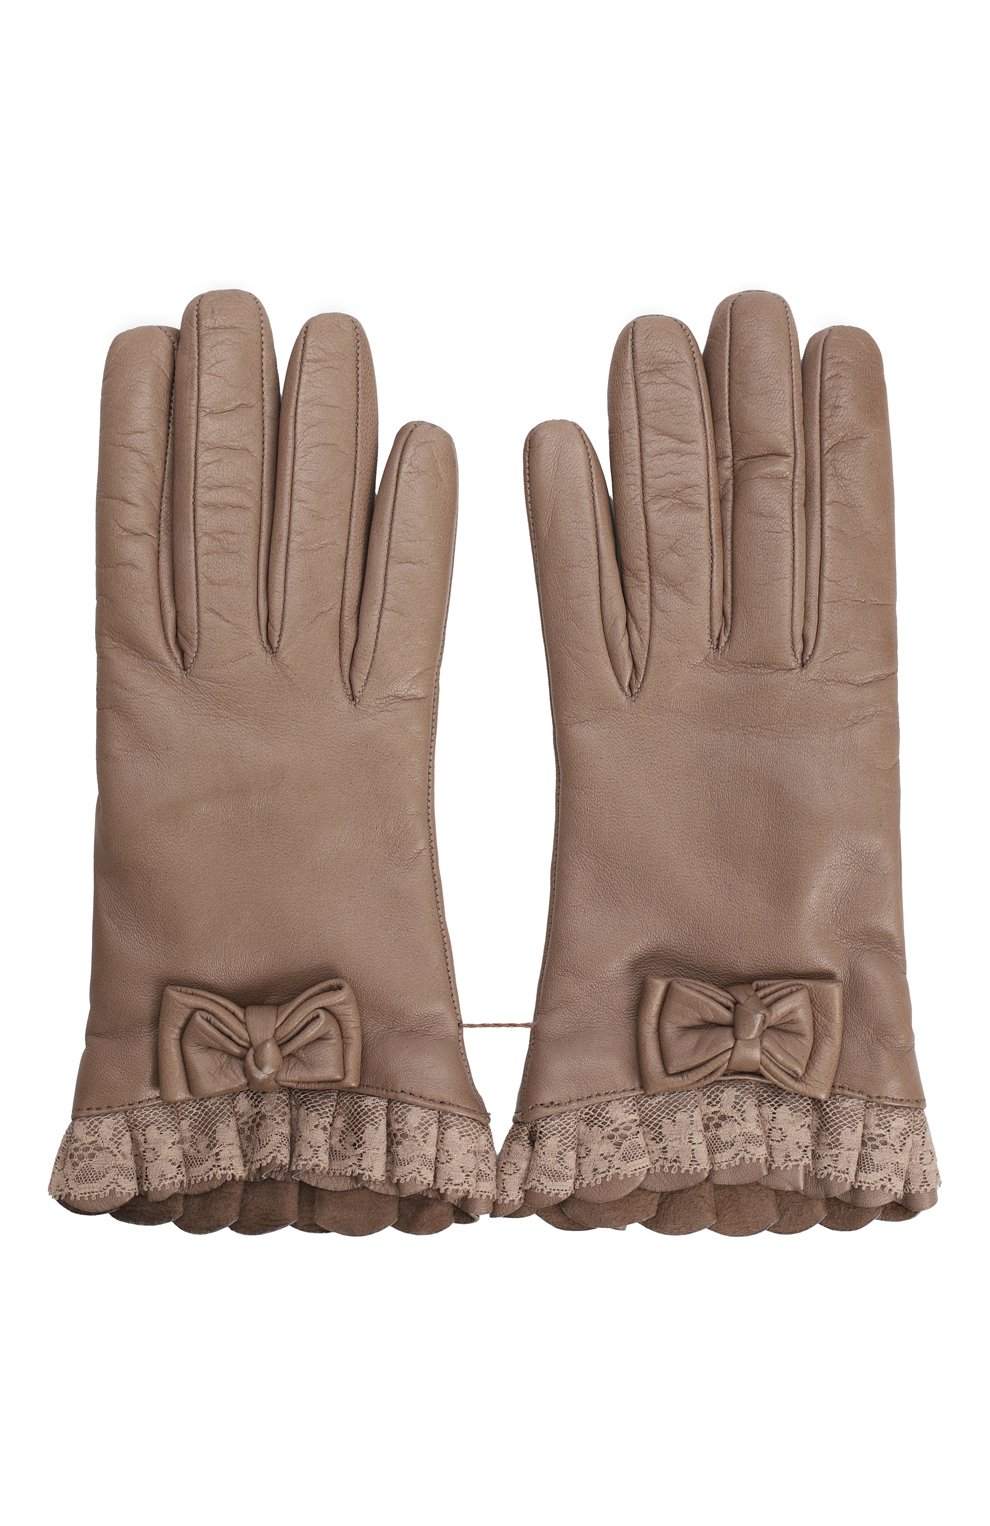 Кожаные перчатки | Valentino | Бежевый - 2